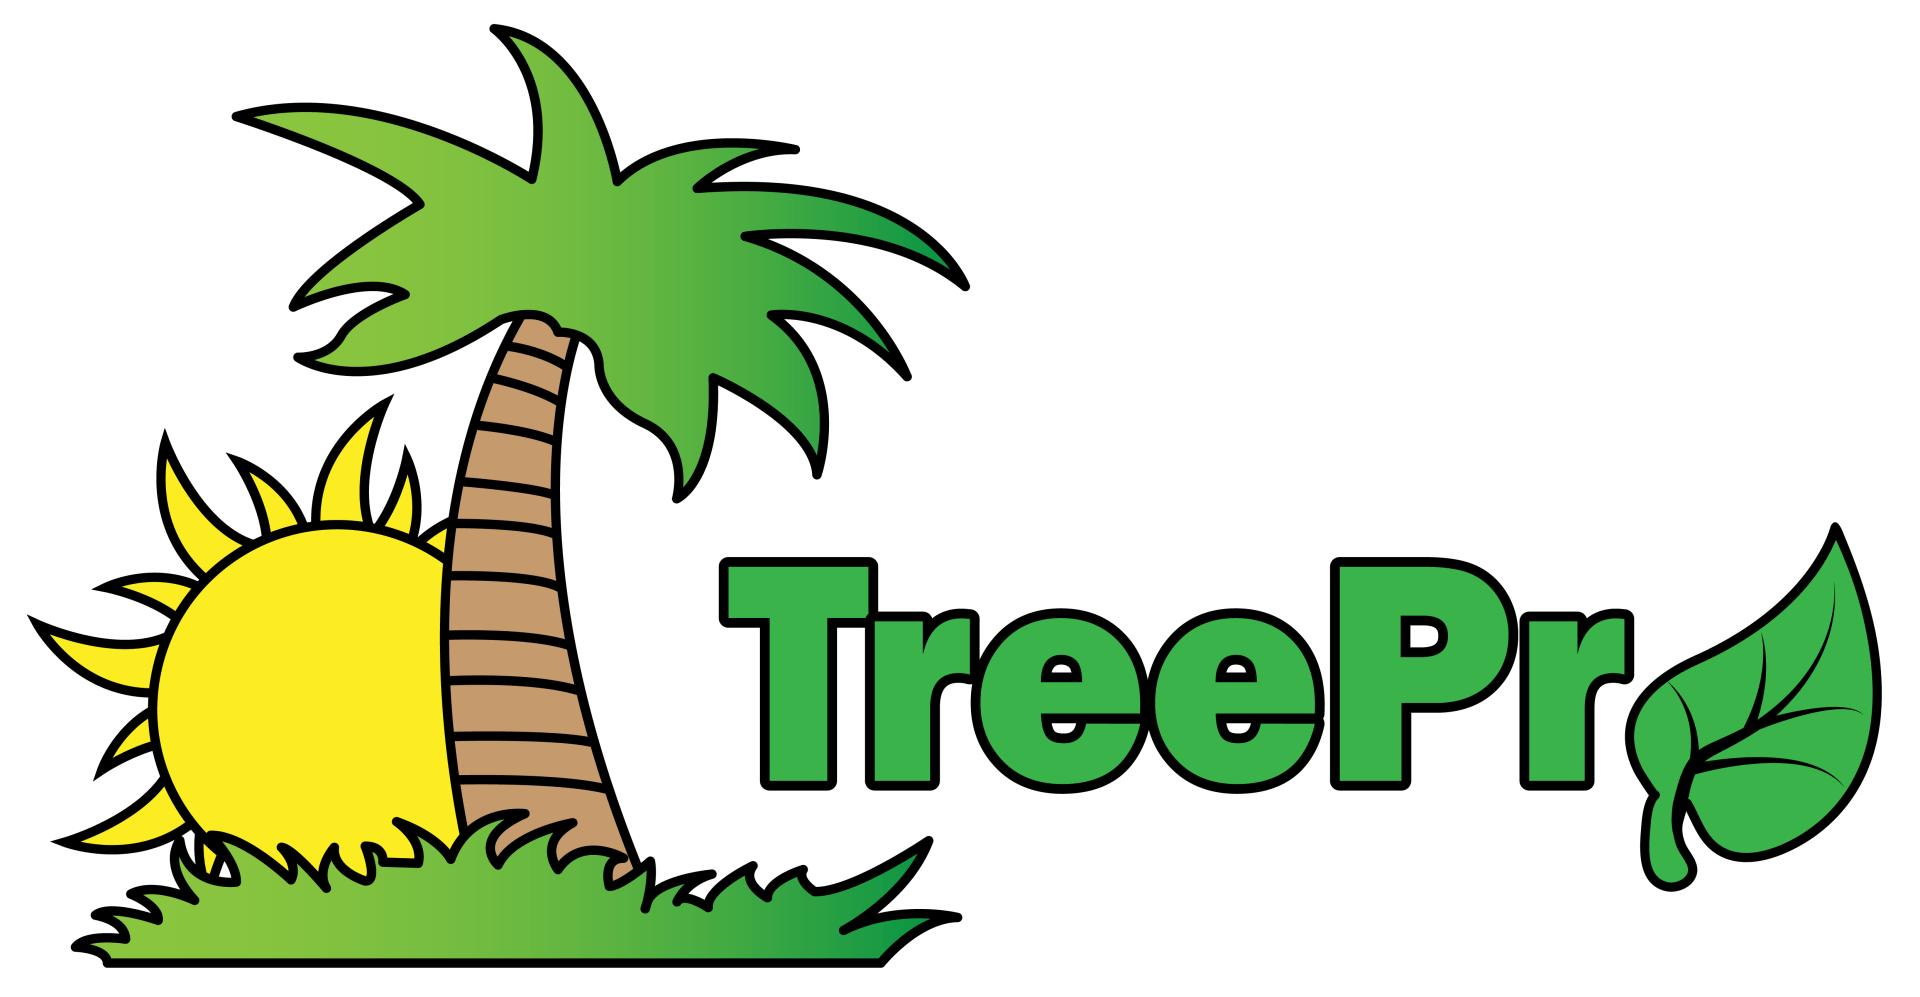 TreePro- Palm Tree Specialist in Las Vegas, NV